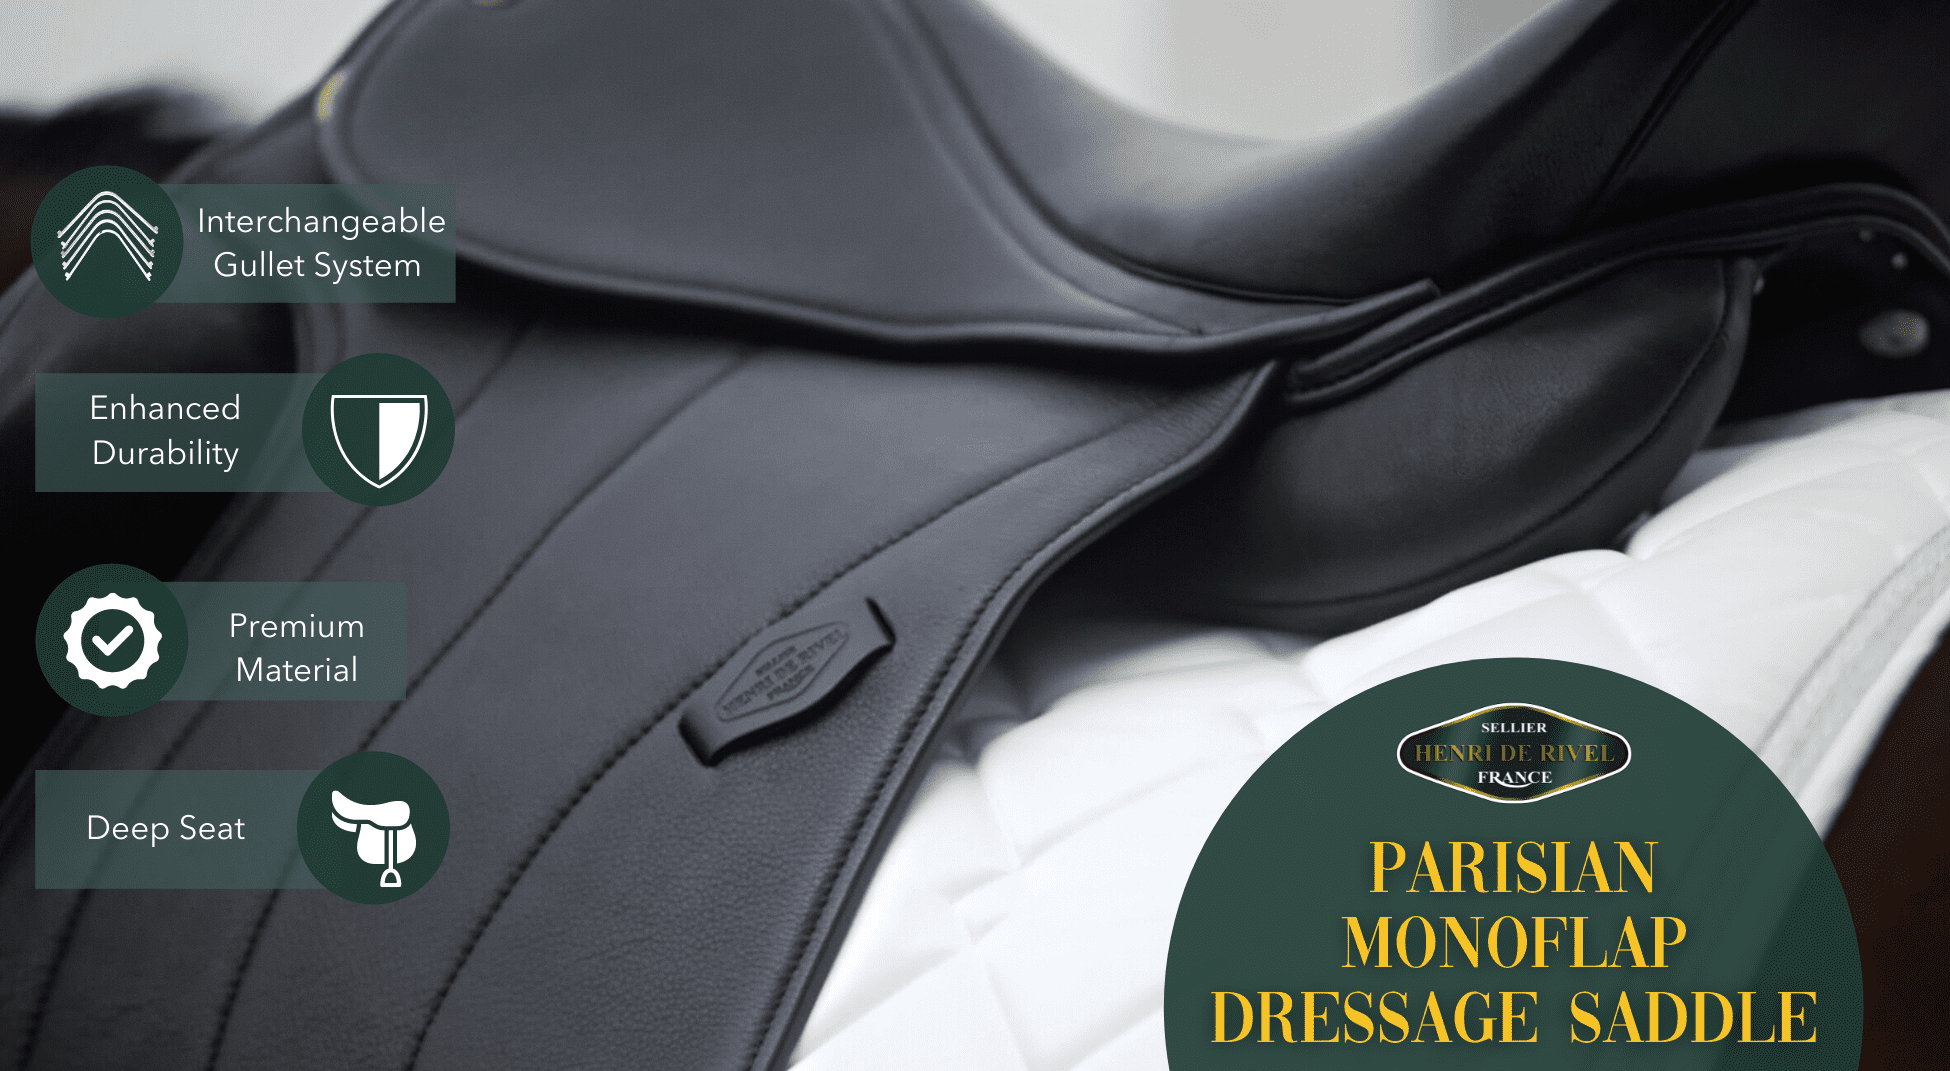 Henri de Rivel Parisian Monoflap Dressage Saddle - Breeches.com